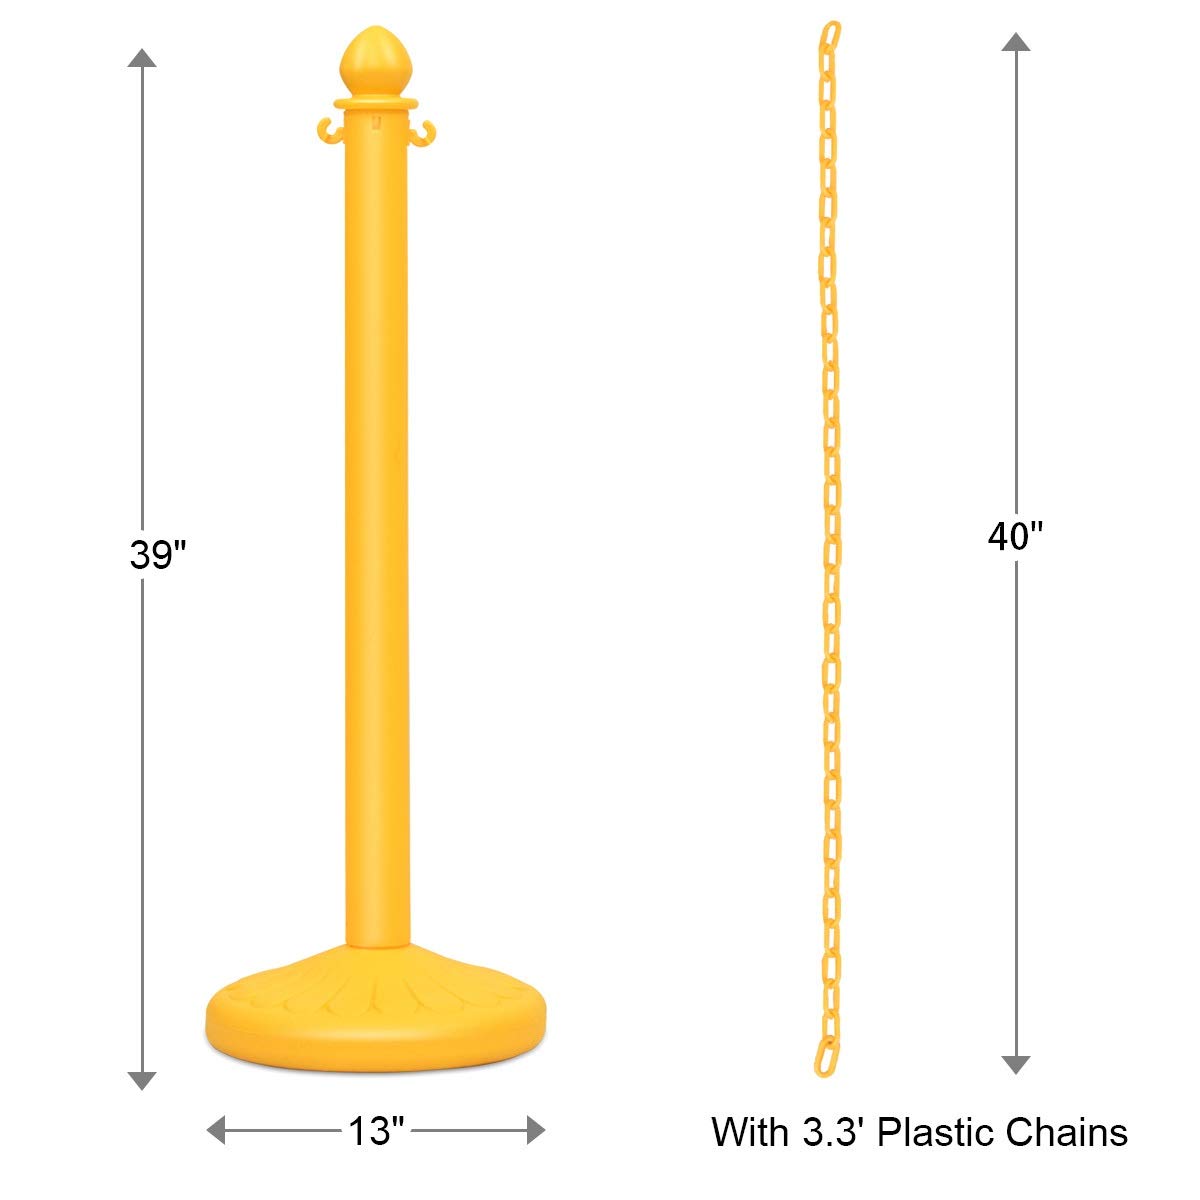 6pcs Plastic Stanchion Set, Safety Stanchion Barrier Posts Queue Line Pole